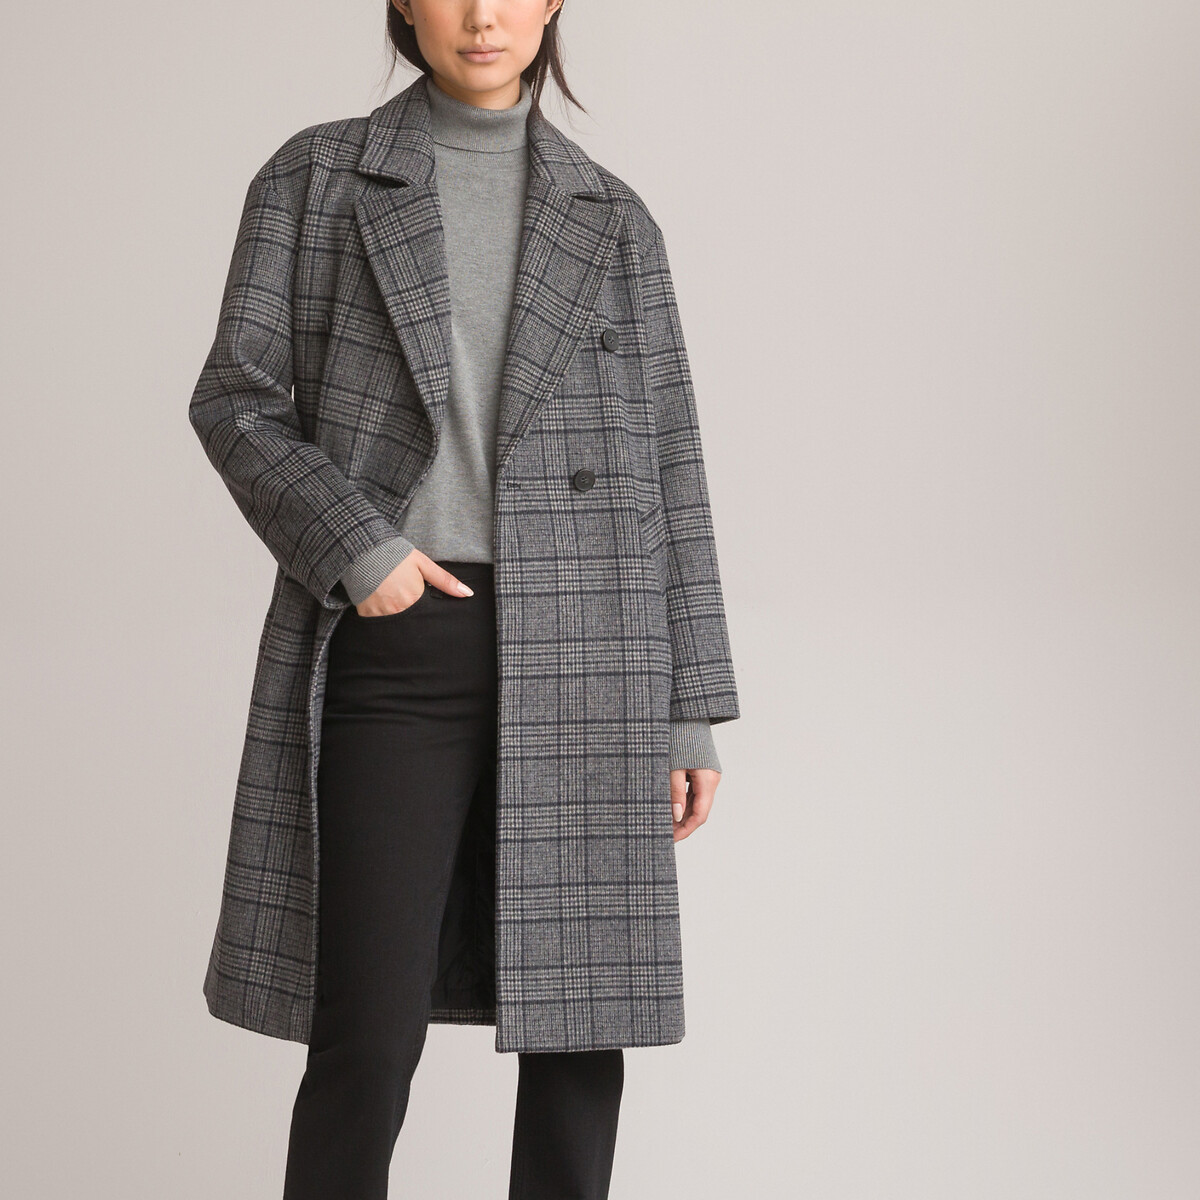 Пальто длинное в клетку 42 (FR) - 48 (RUS) серый пальто laredoute пальто длинное percy 38 fr 44 rus бежевый